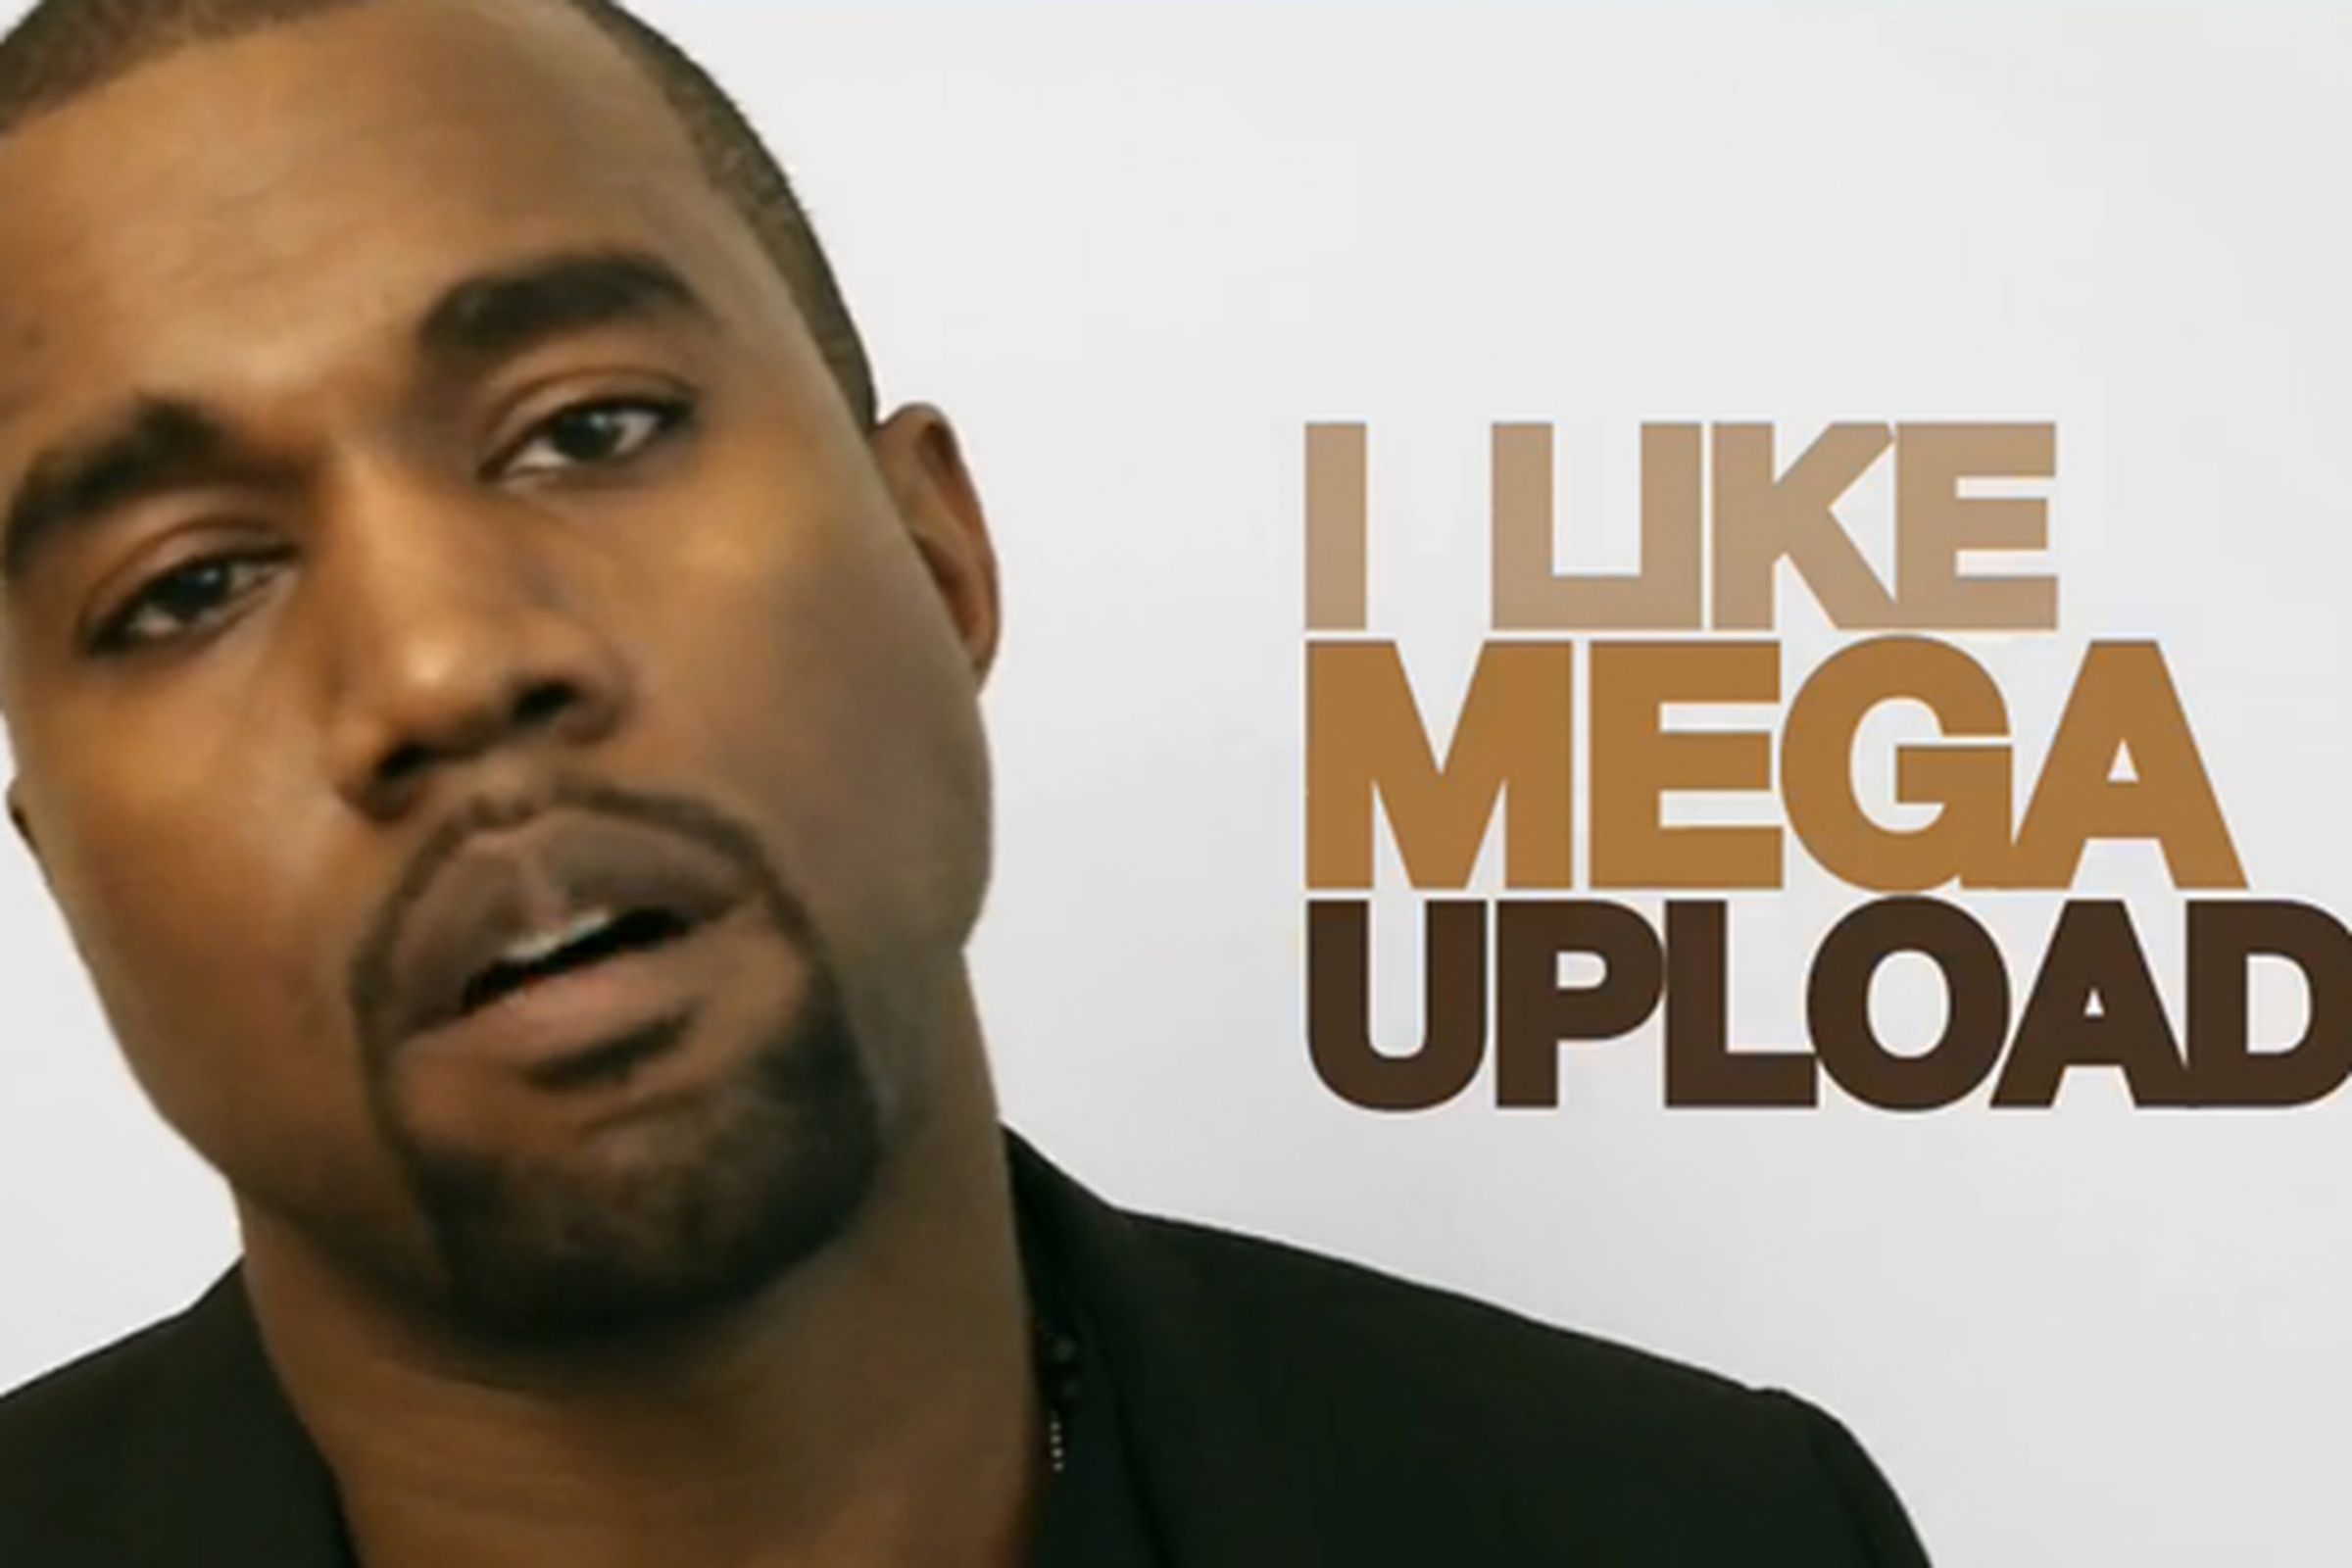 Kanye West Loves Megaupload